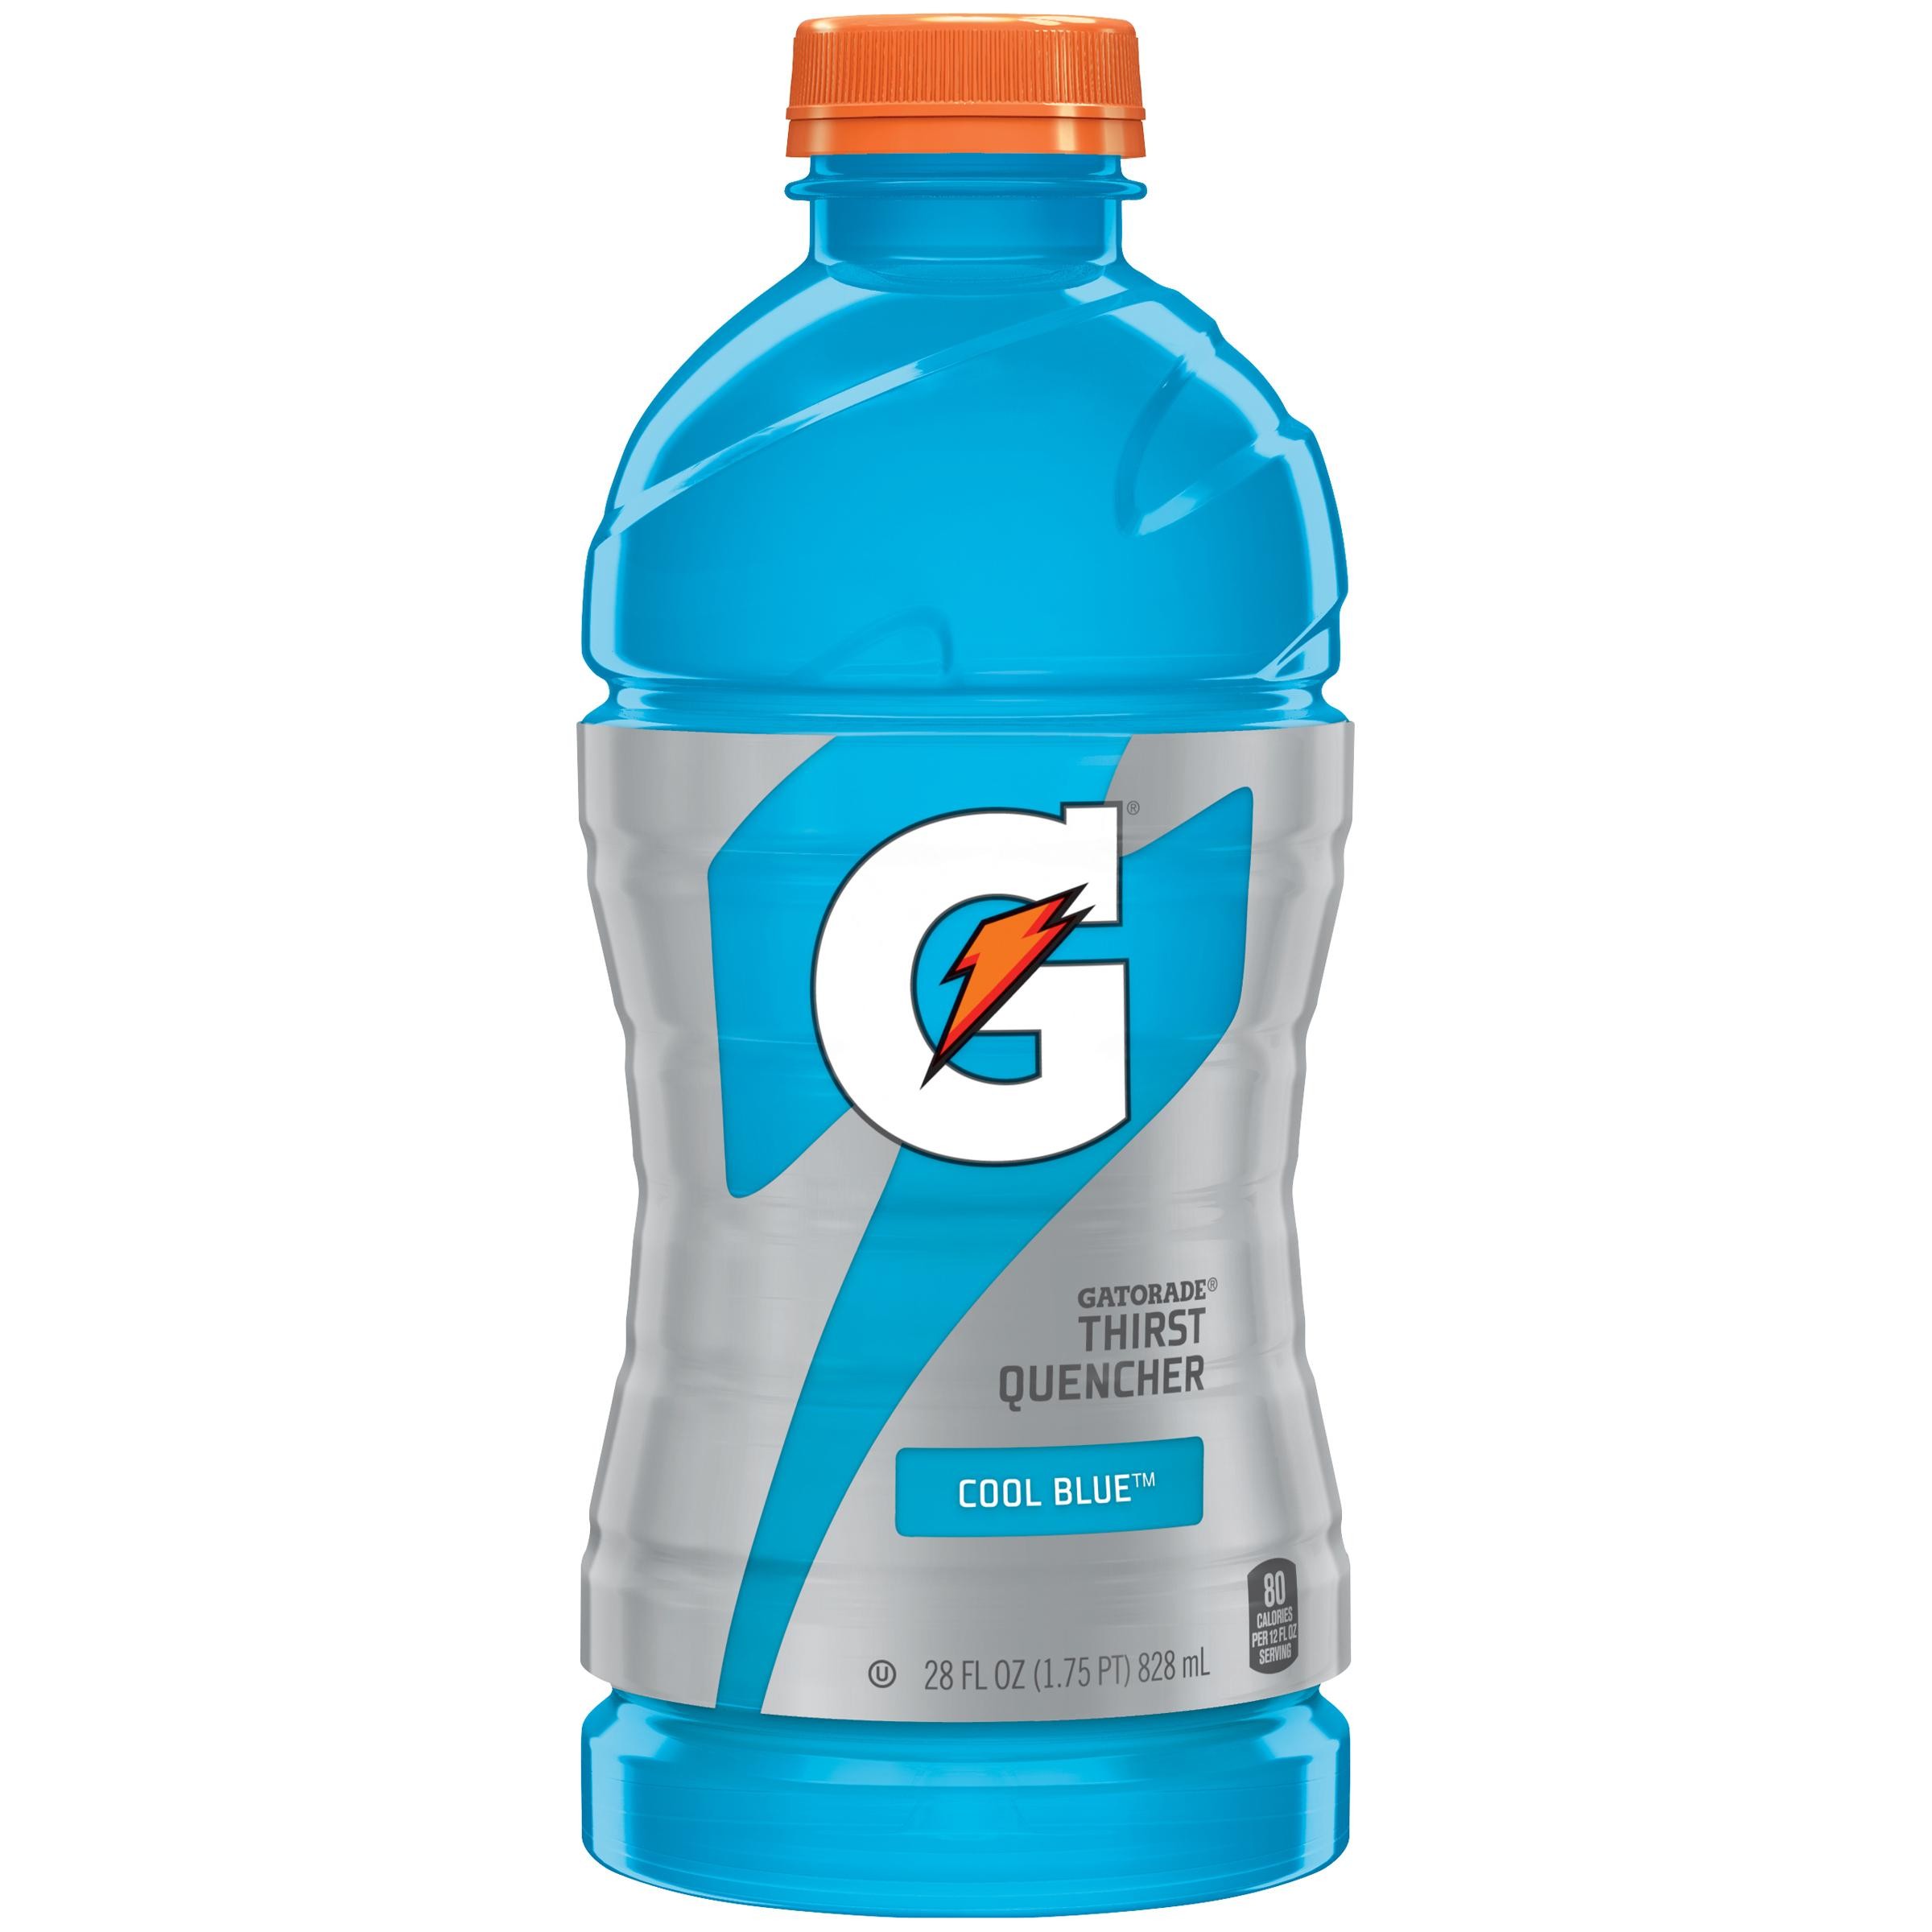 Gatorade Thirst Quencher Cool Blue - 28.0 Fl Oz